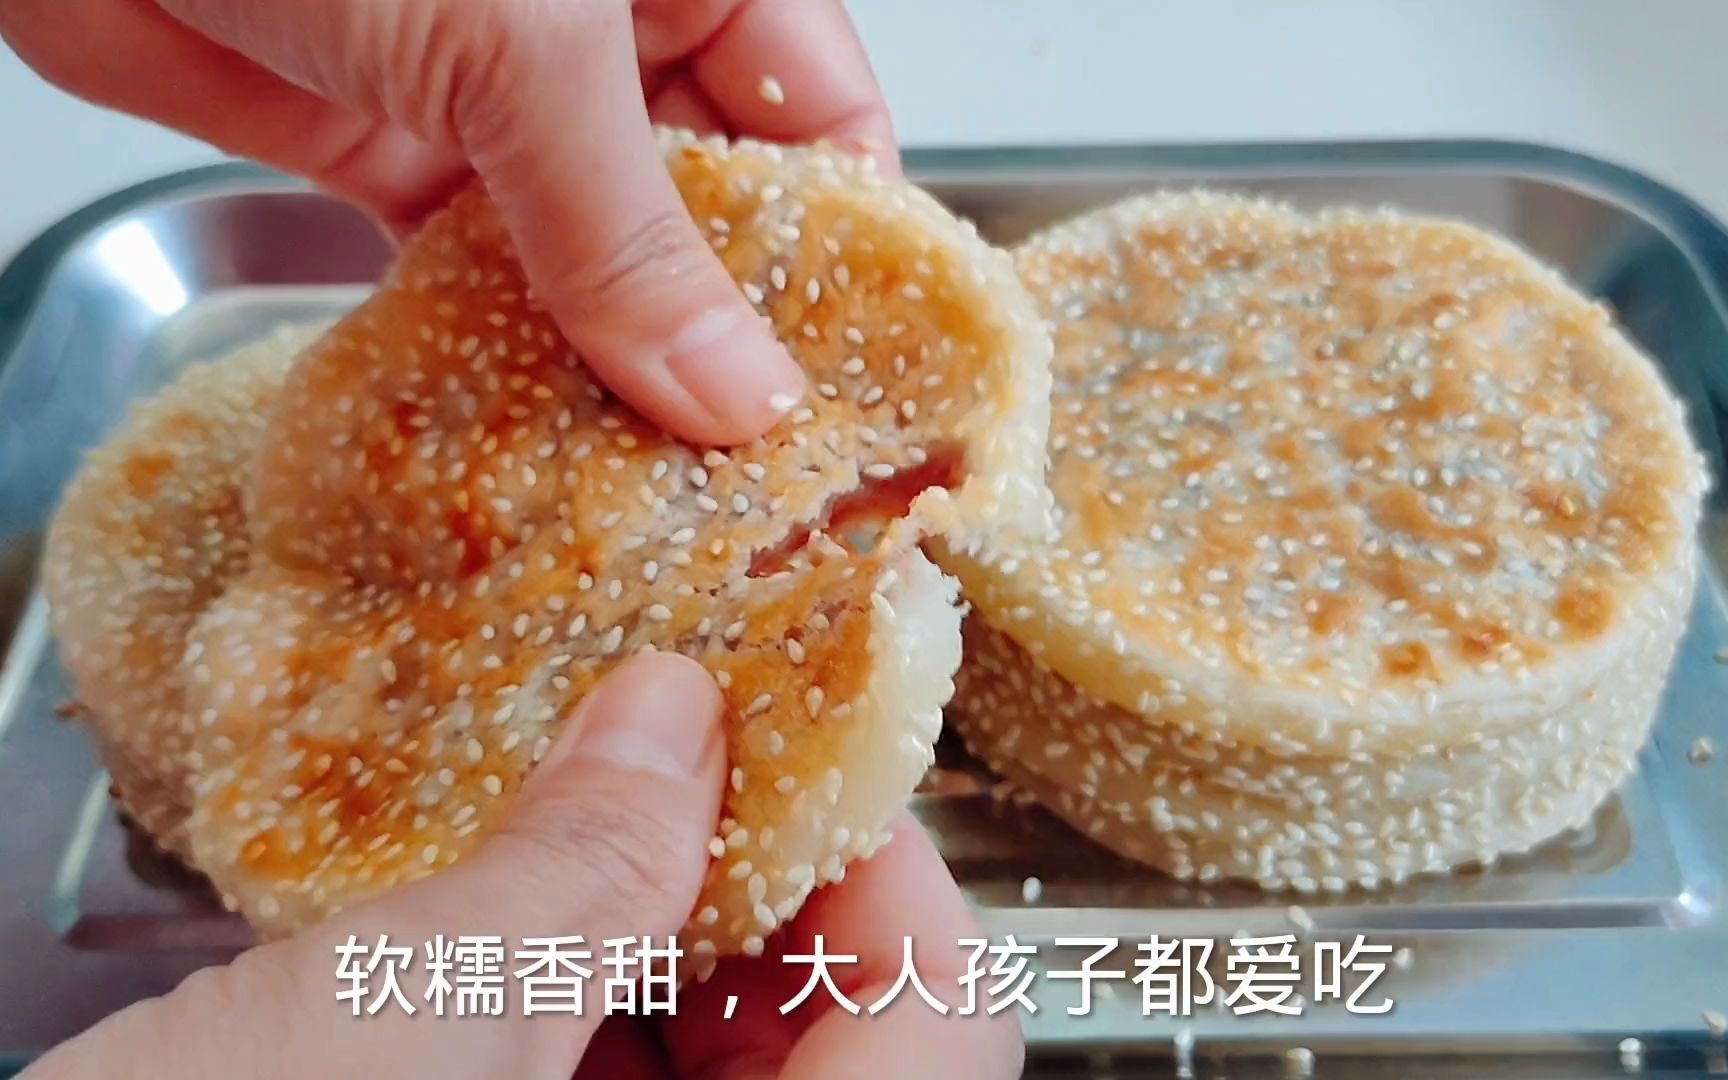 红豆沙酥饼的做法_【图解】 红豆沙酥饼怎么做如何做好吃_ 红豆沙酥饼家常做法大全_桐桐厨房_豆果美食